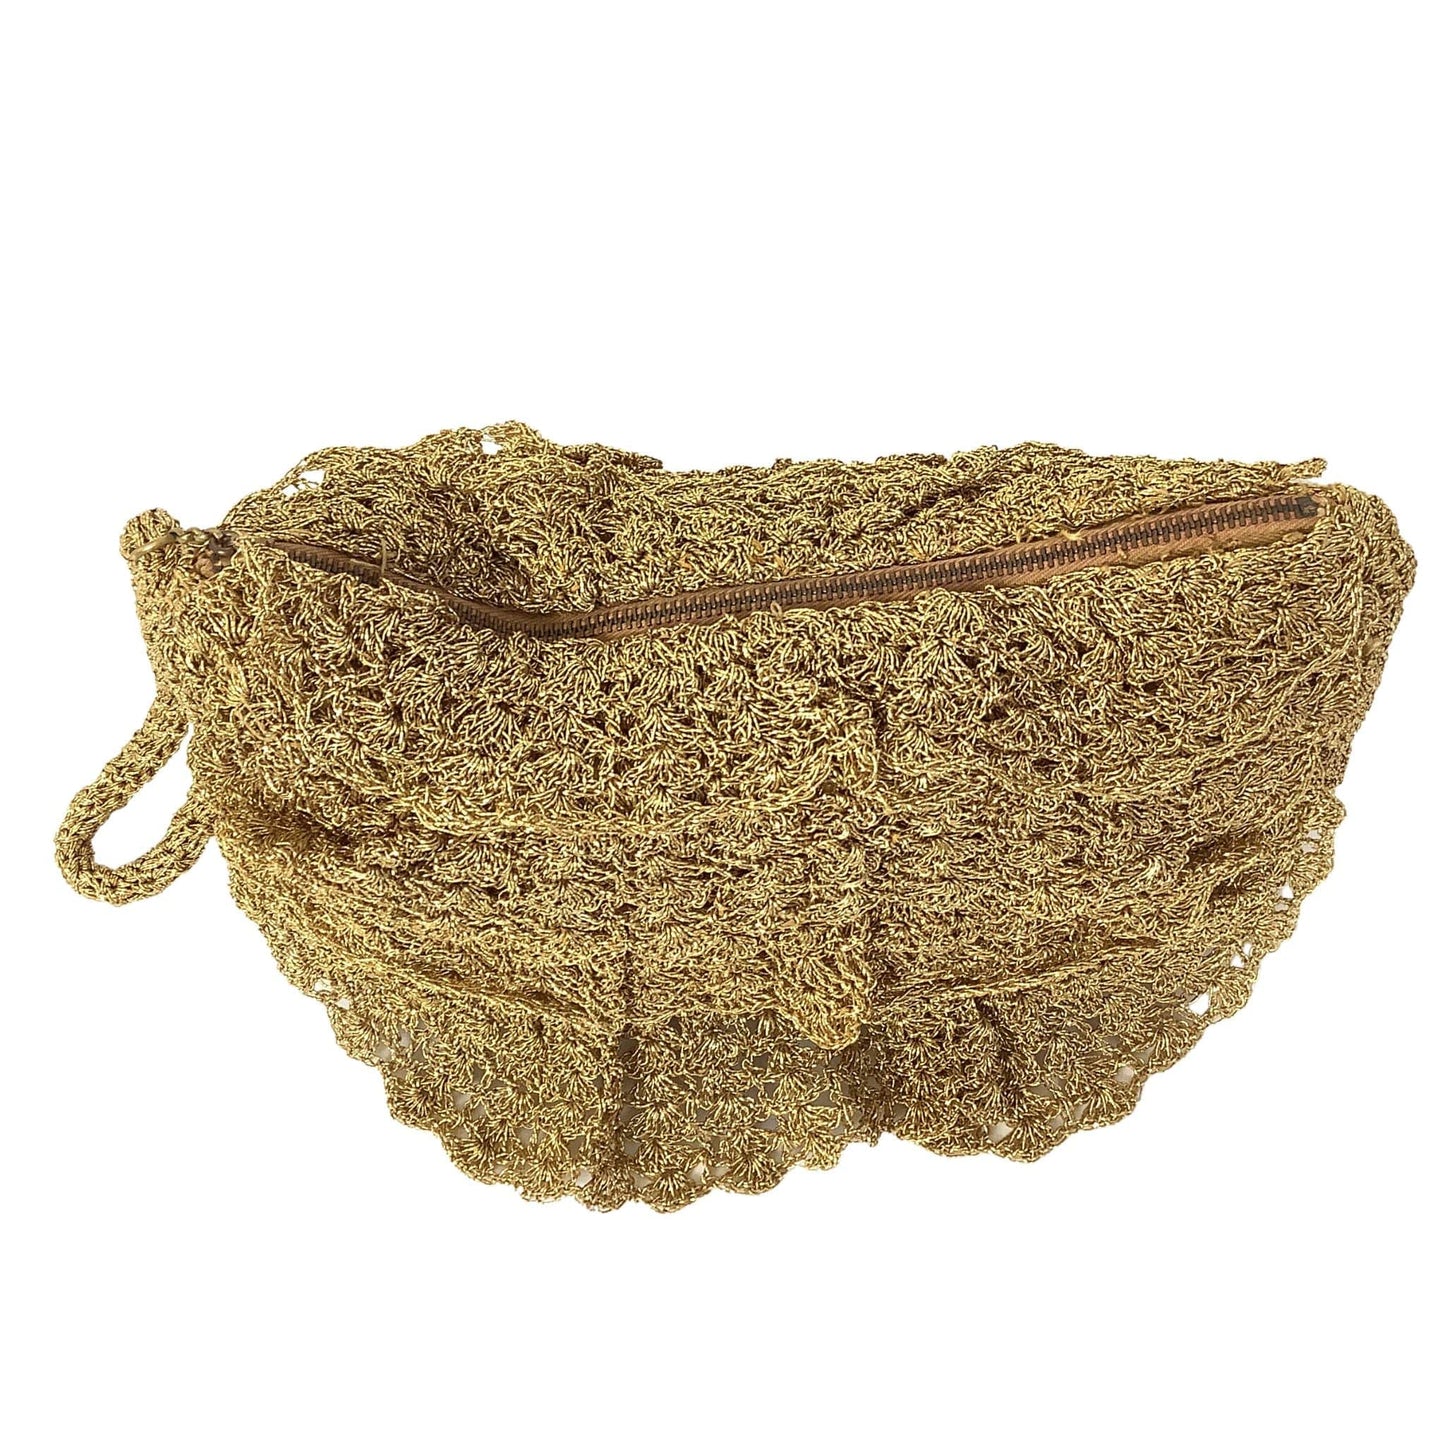 1940s Pichel Gold Crochet Bag Gold / Crochet / Vintage 1940s